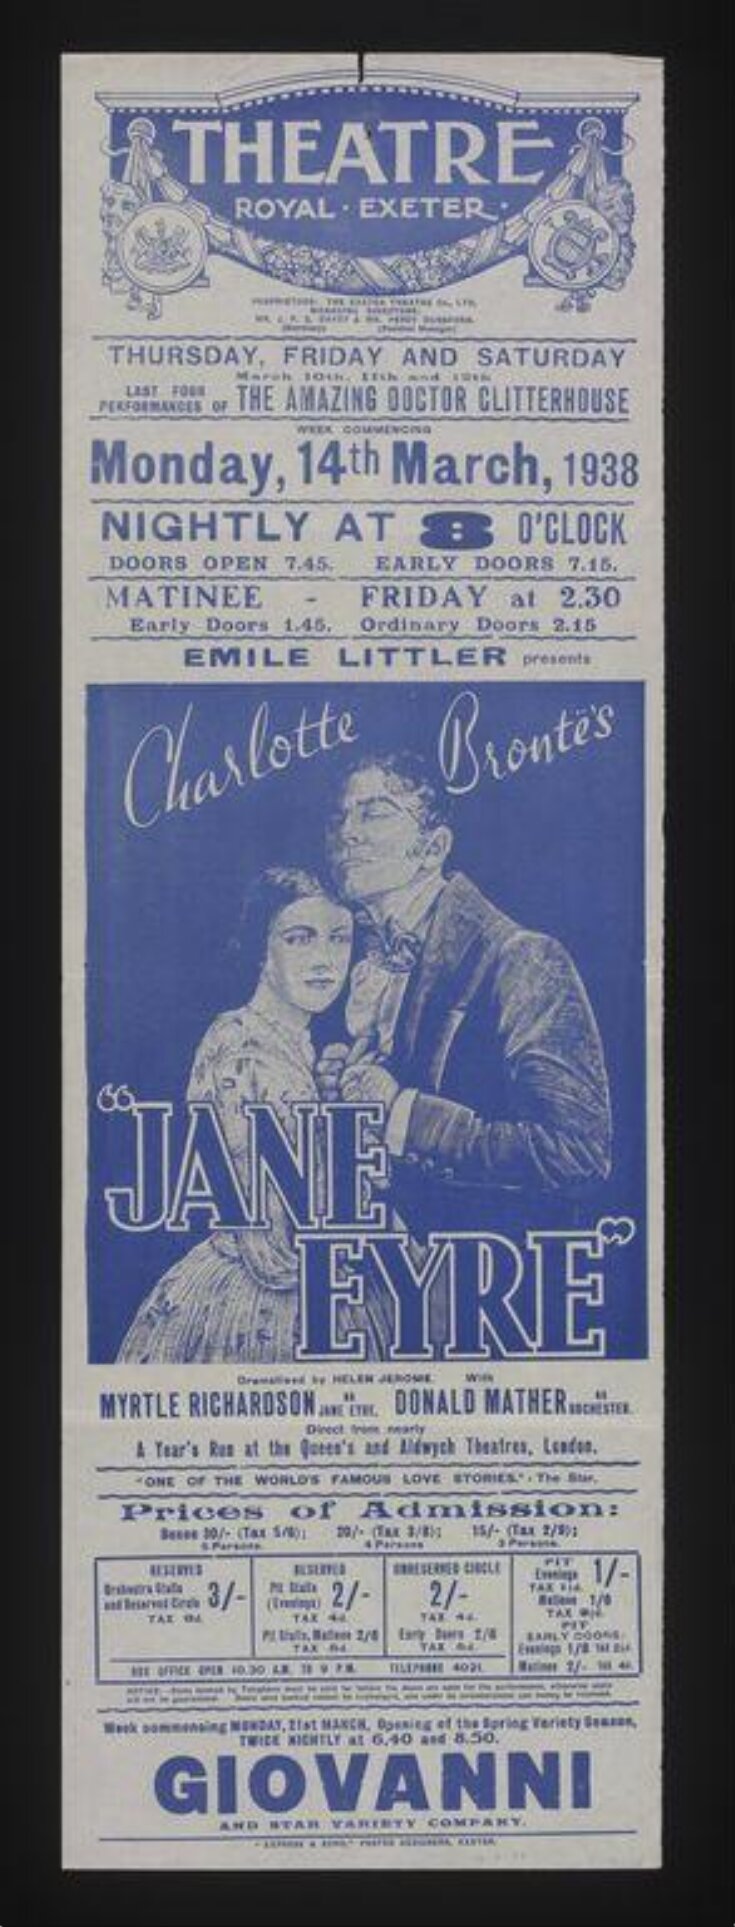 Jane Eyre image